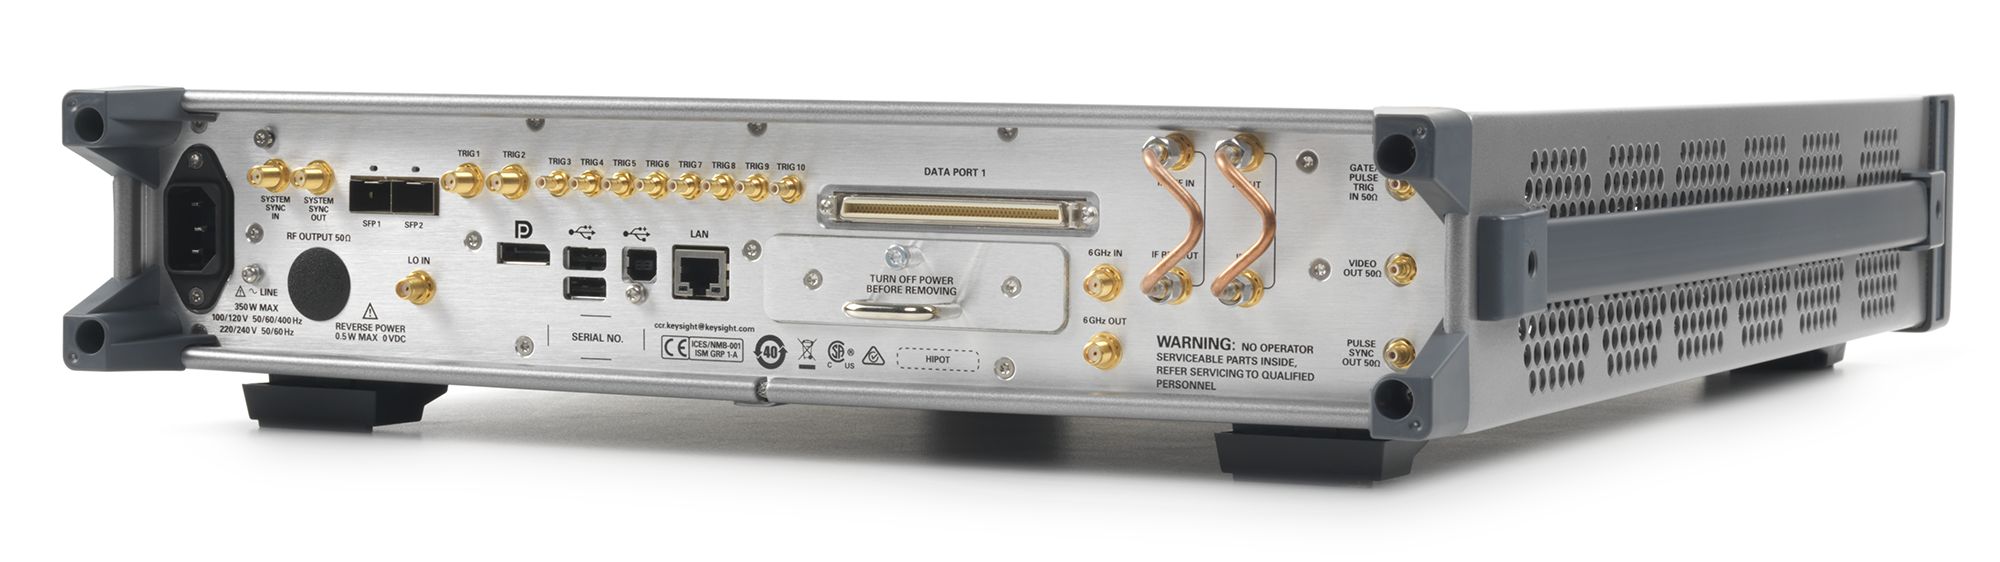 Keysight N5194A-540 50 MHz to 40 GHz